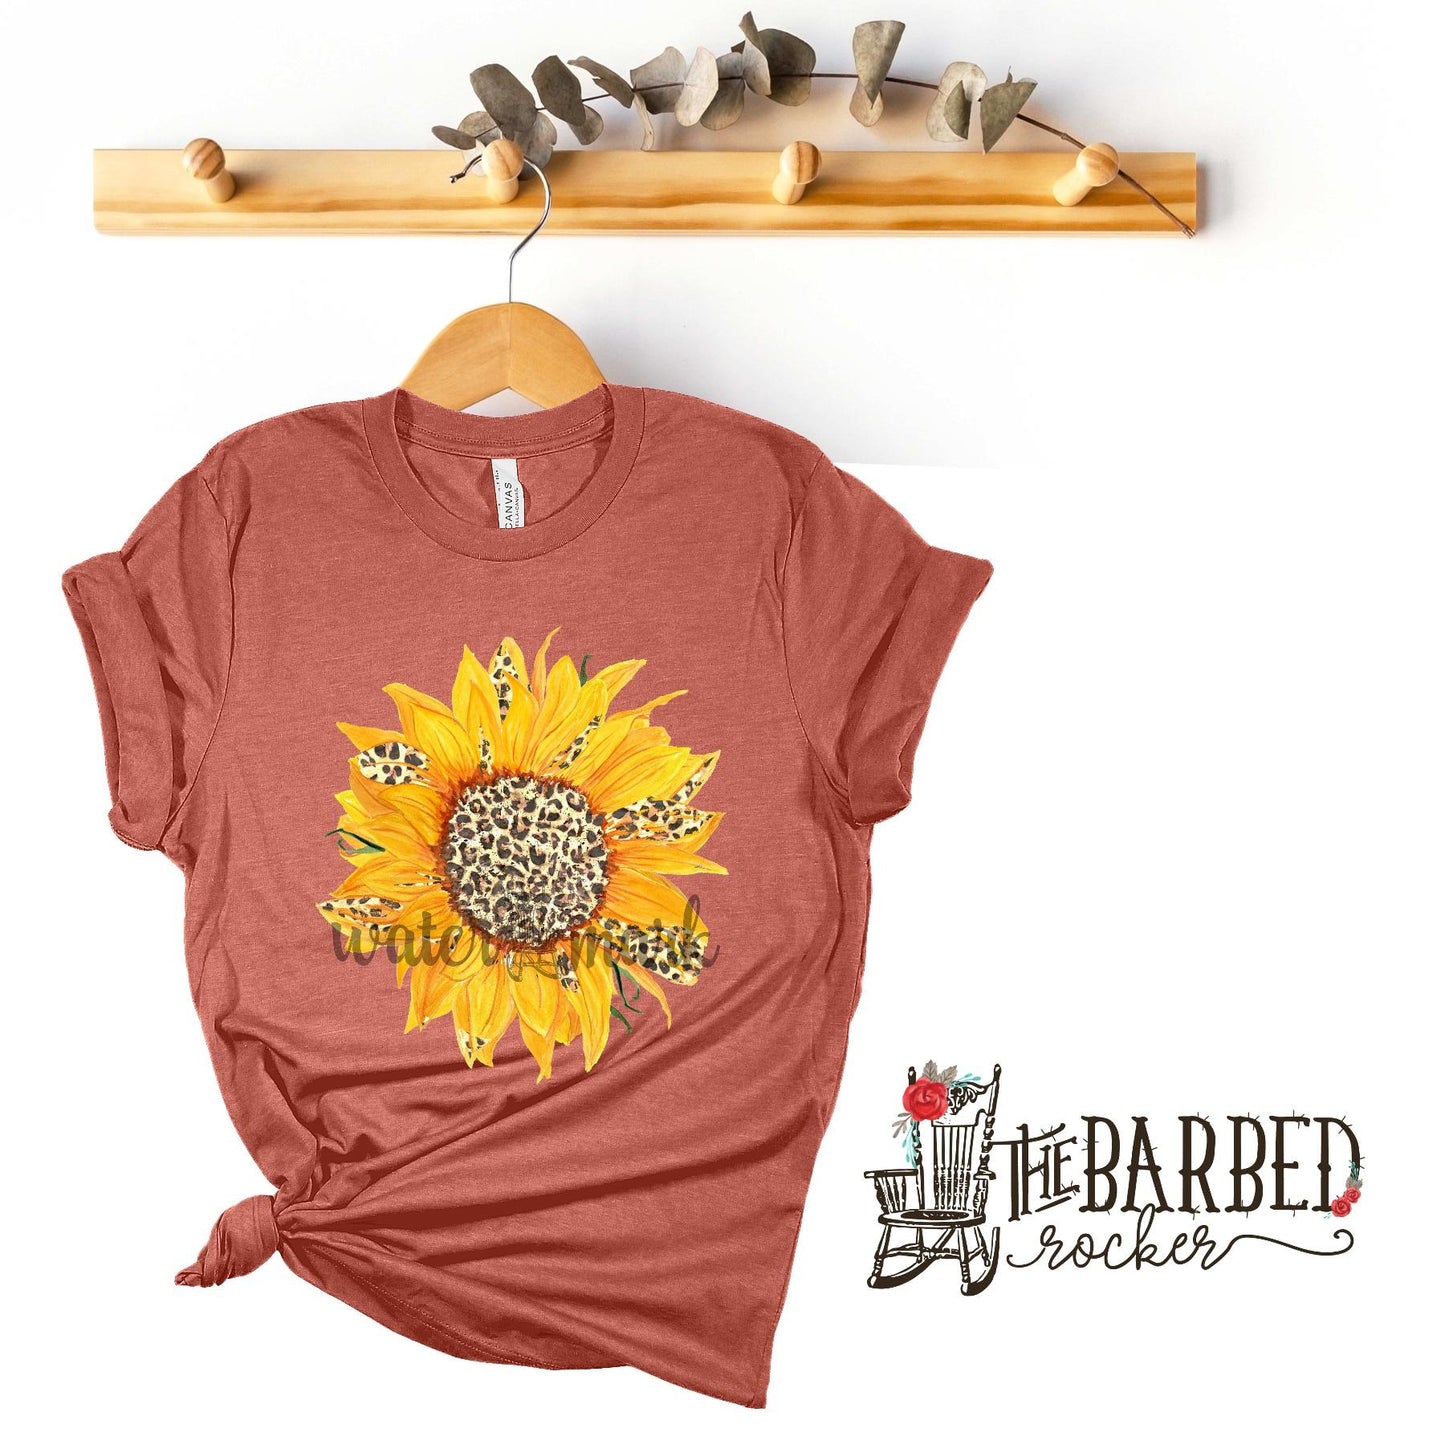 Cheetah Sunflower T-Shirt Leopard Women's Casual Shirt